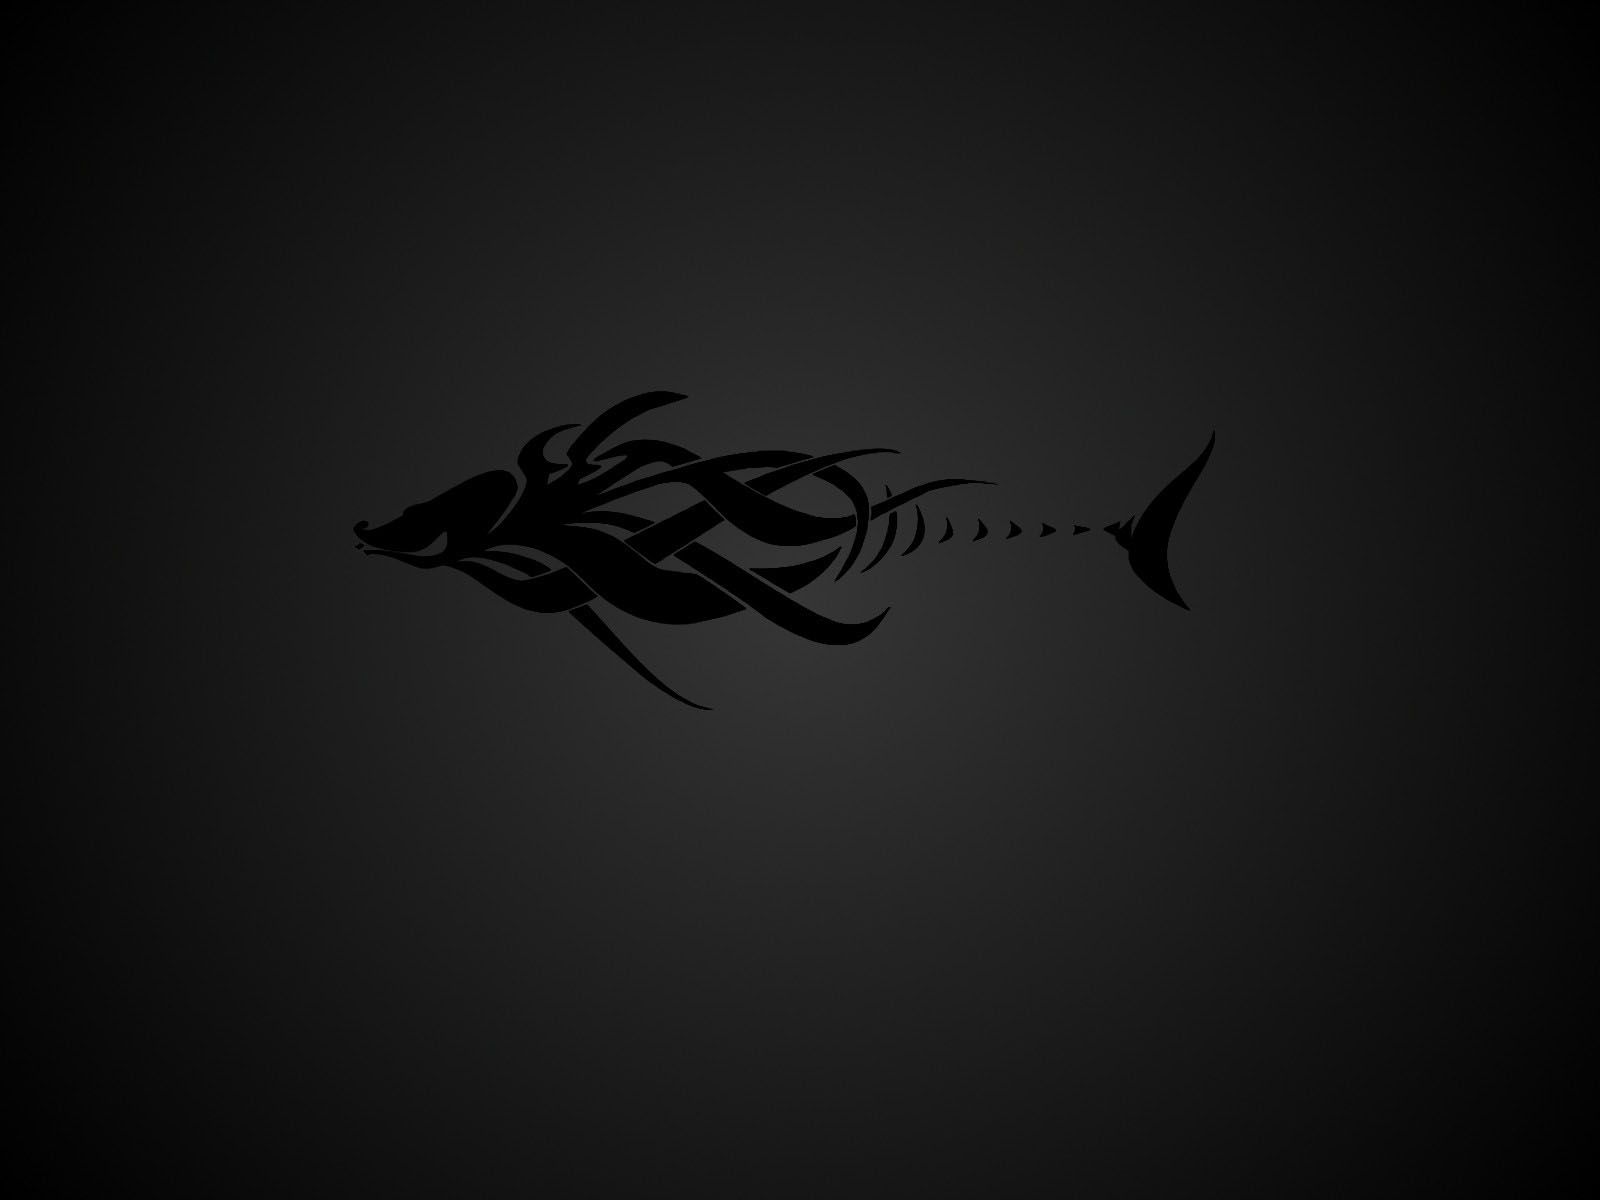 Black Tribal Fish Tattoo Design - 1600x1200 - Wallpaper #2633 on ...